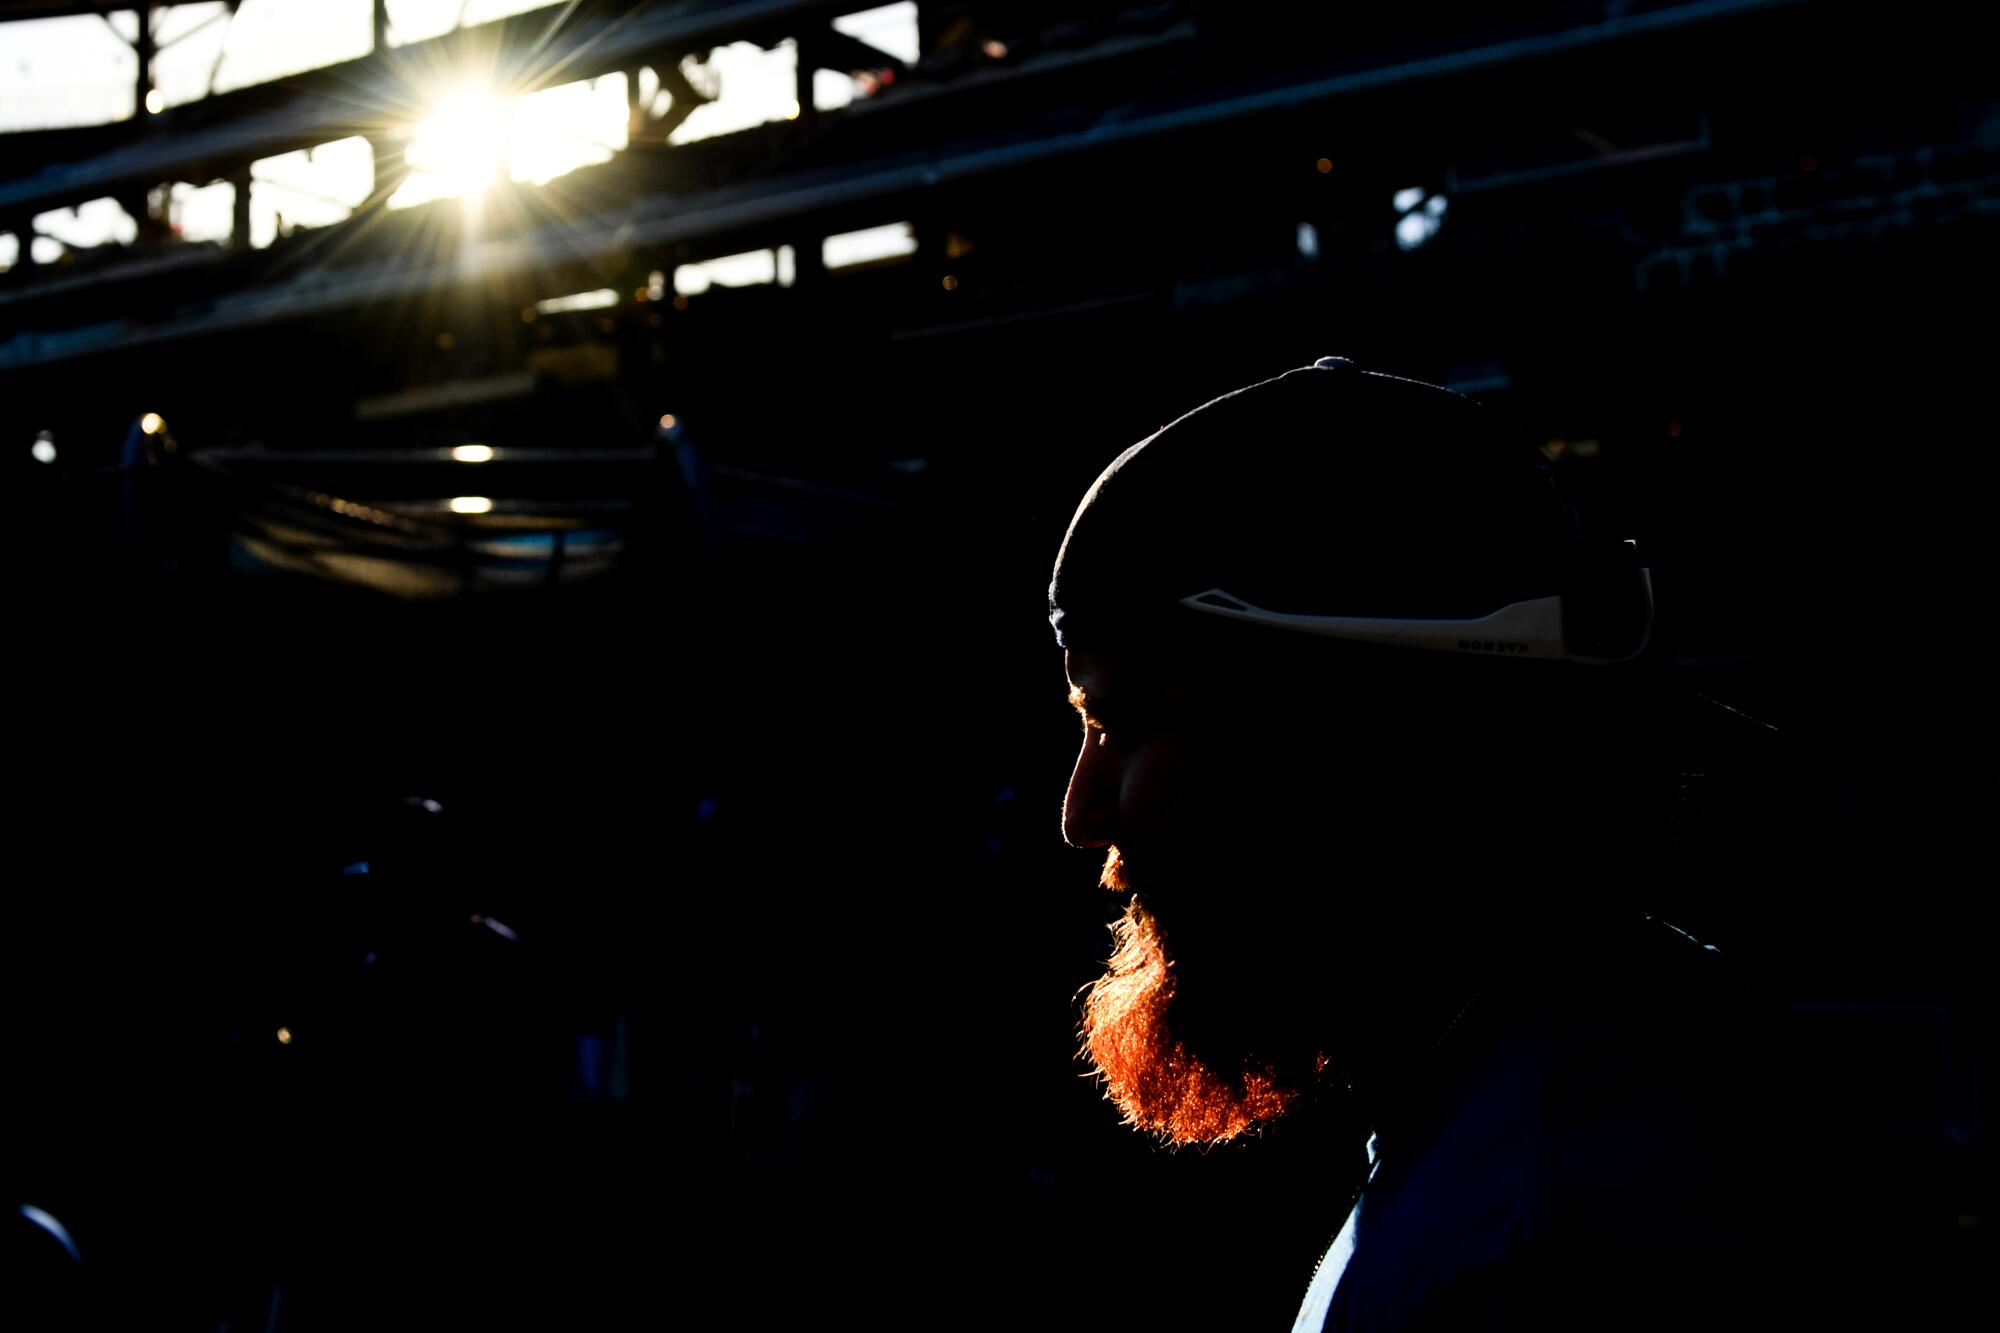 A bearded man, seen in silhouette 